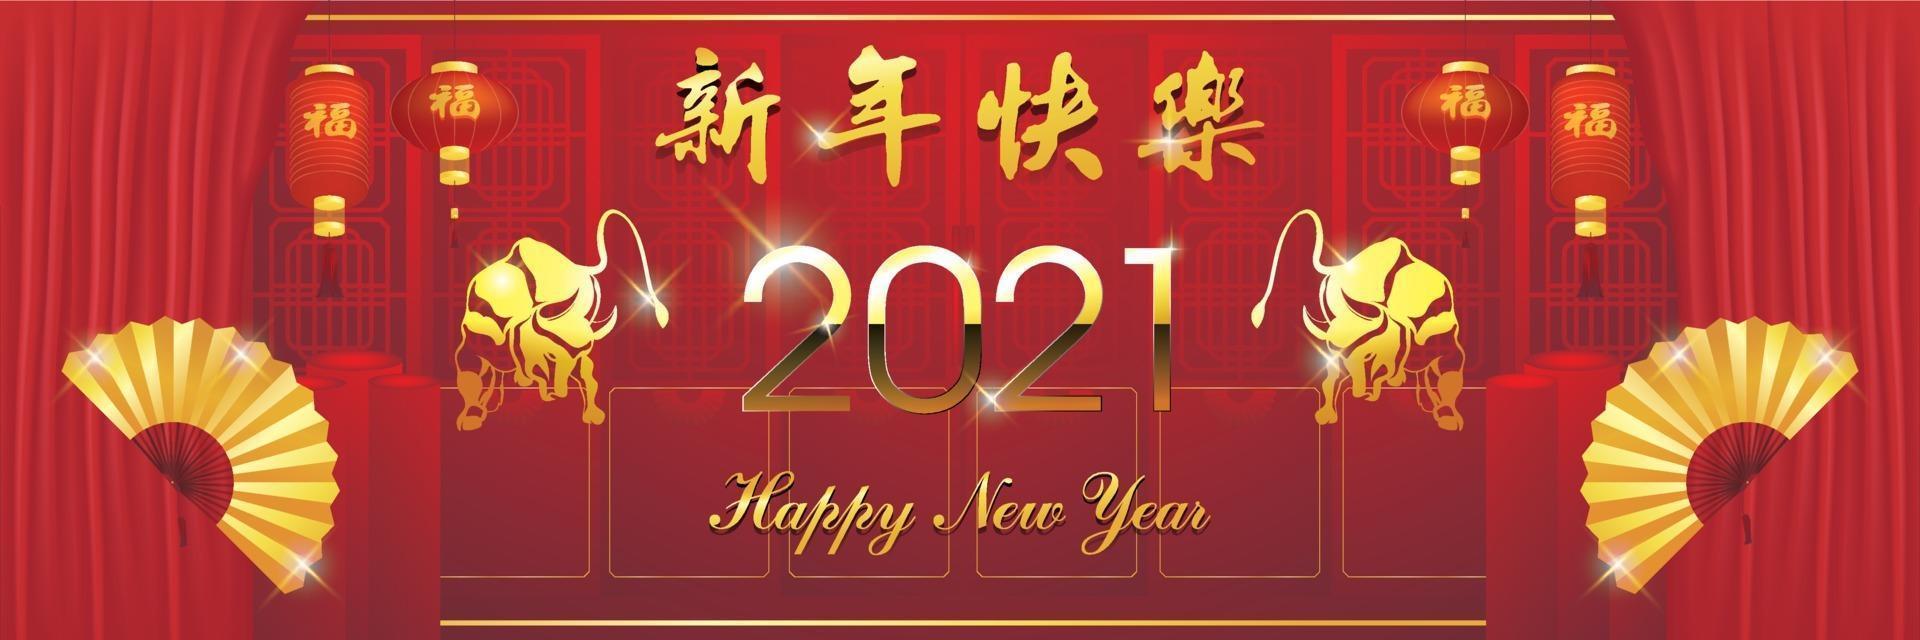 nouvel an chinois 2021 année du boeuf, éléments asiatiques rouges et or avec style artisanal sur fond. vecteur